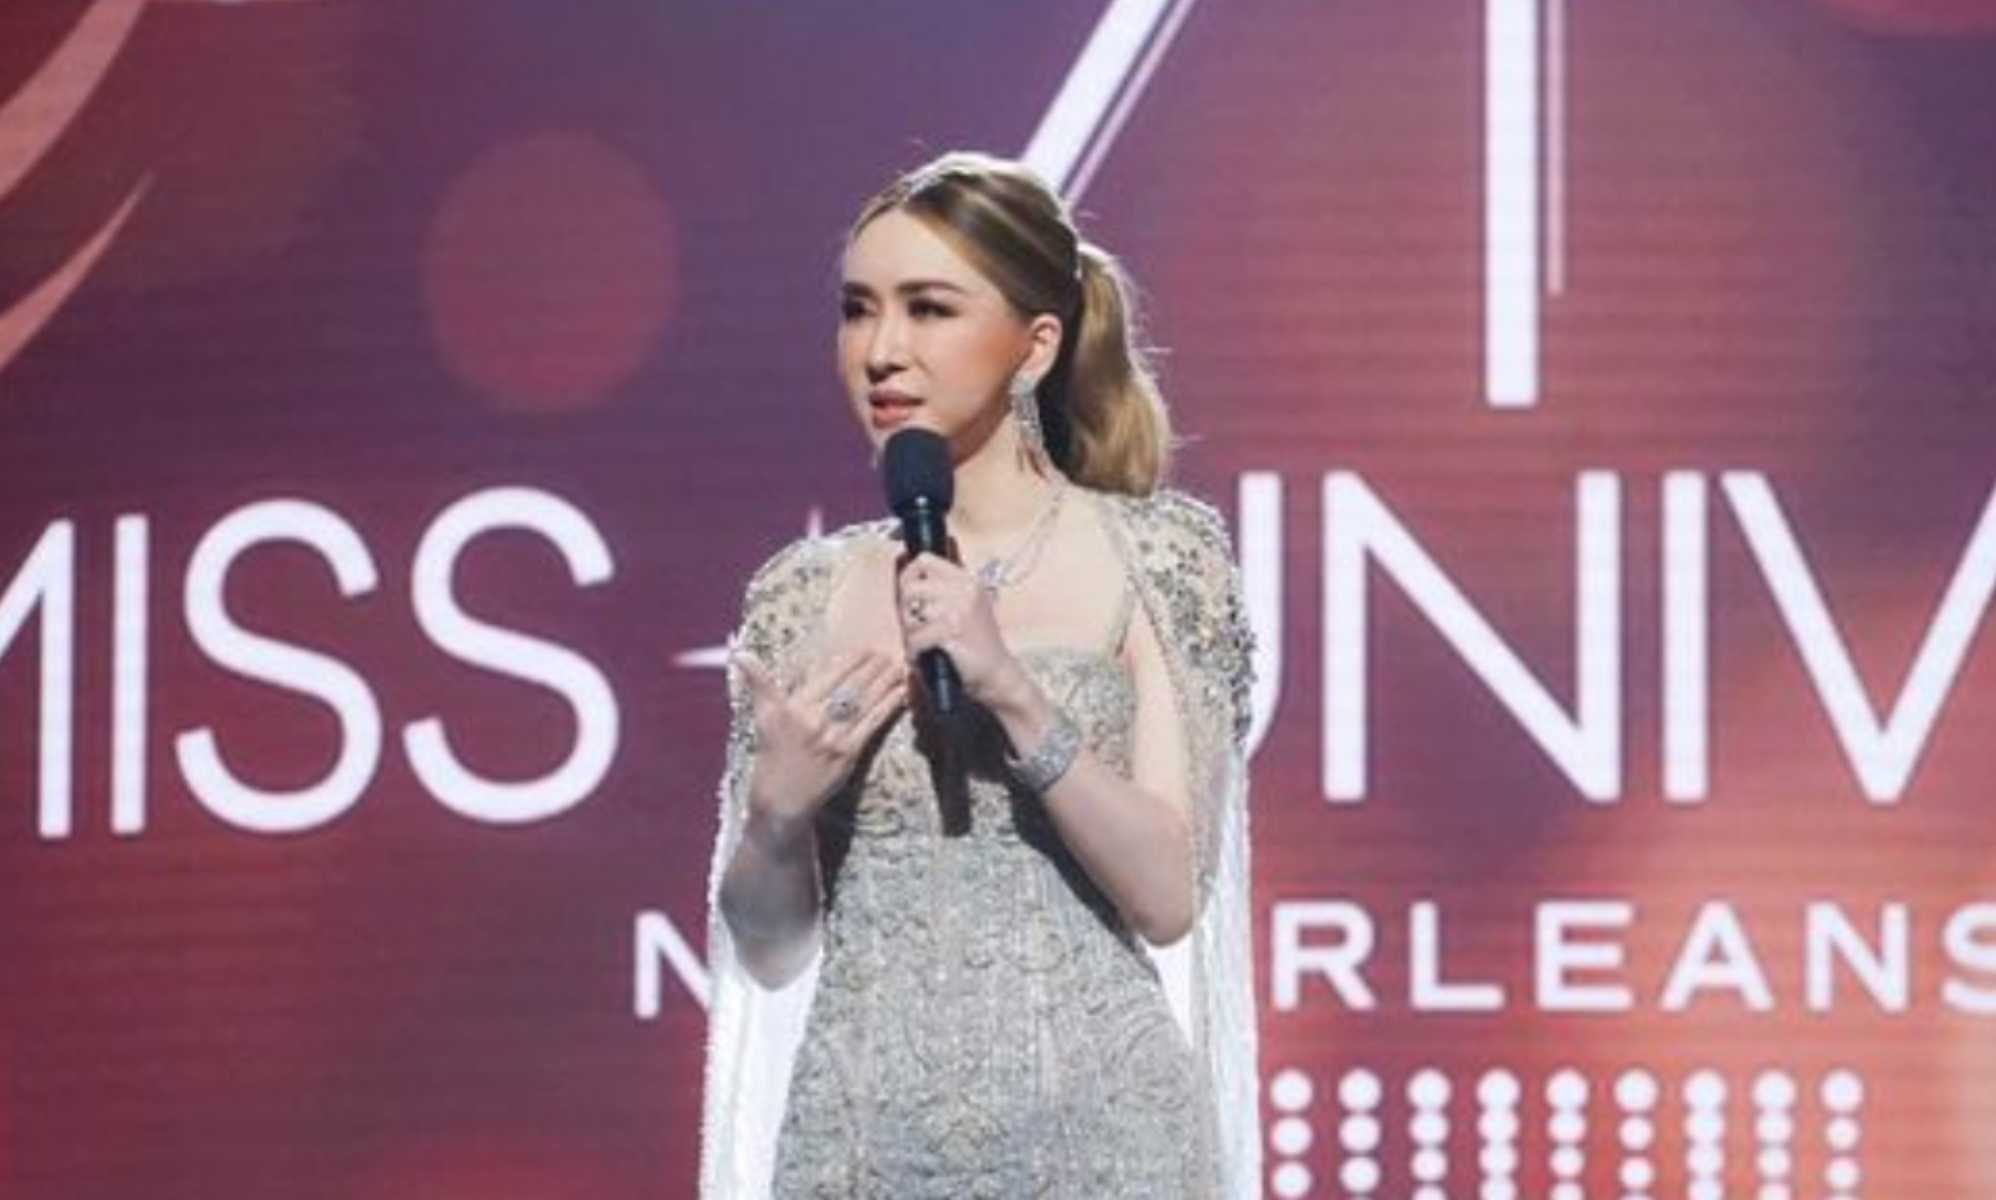 La propietaria de Miss Universo pronuncia un discurso emotivo sobre las mujeres y el poder